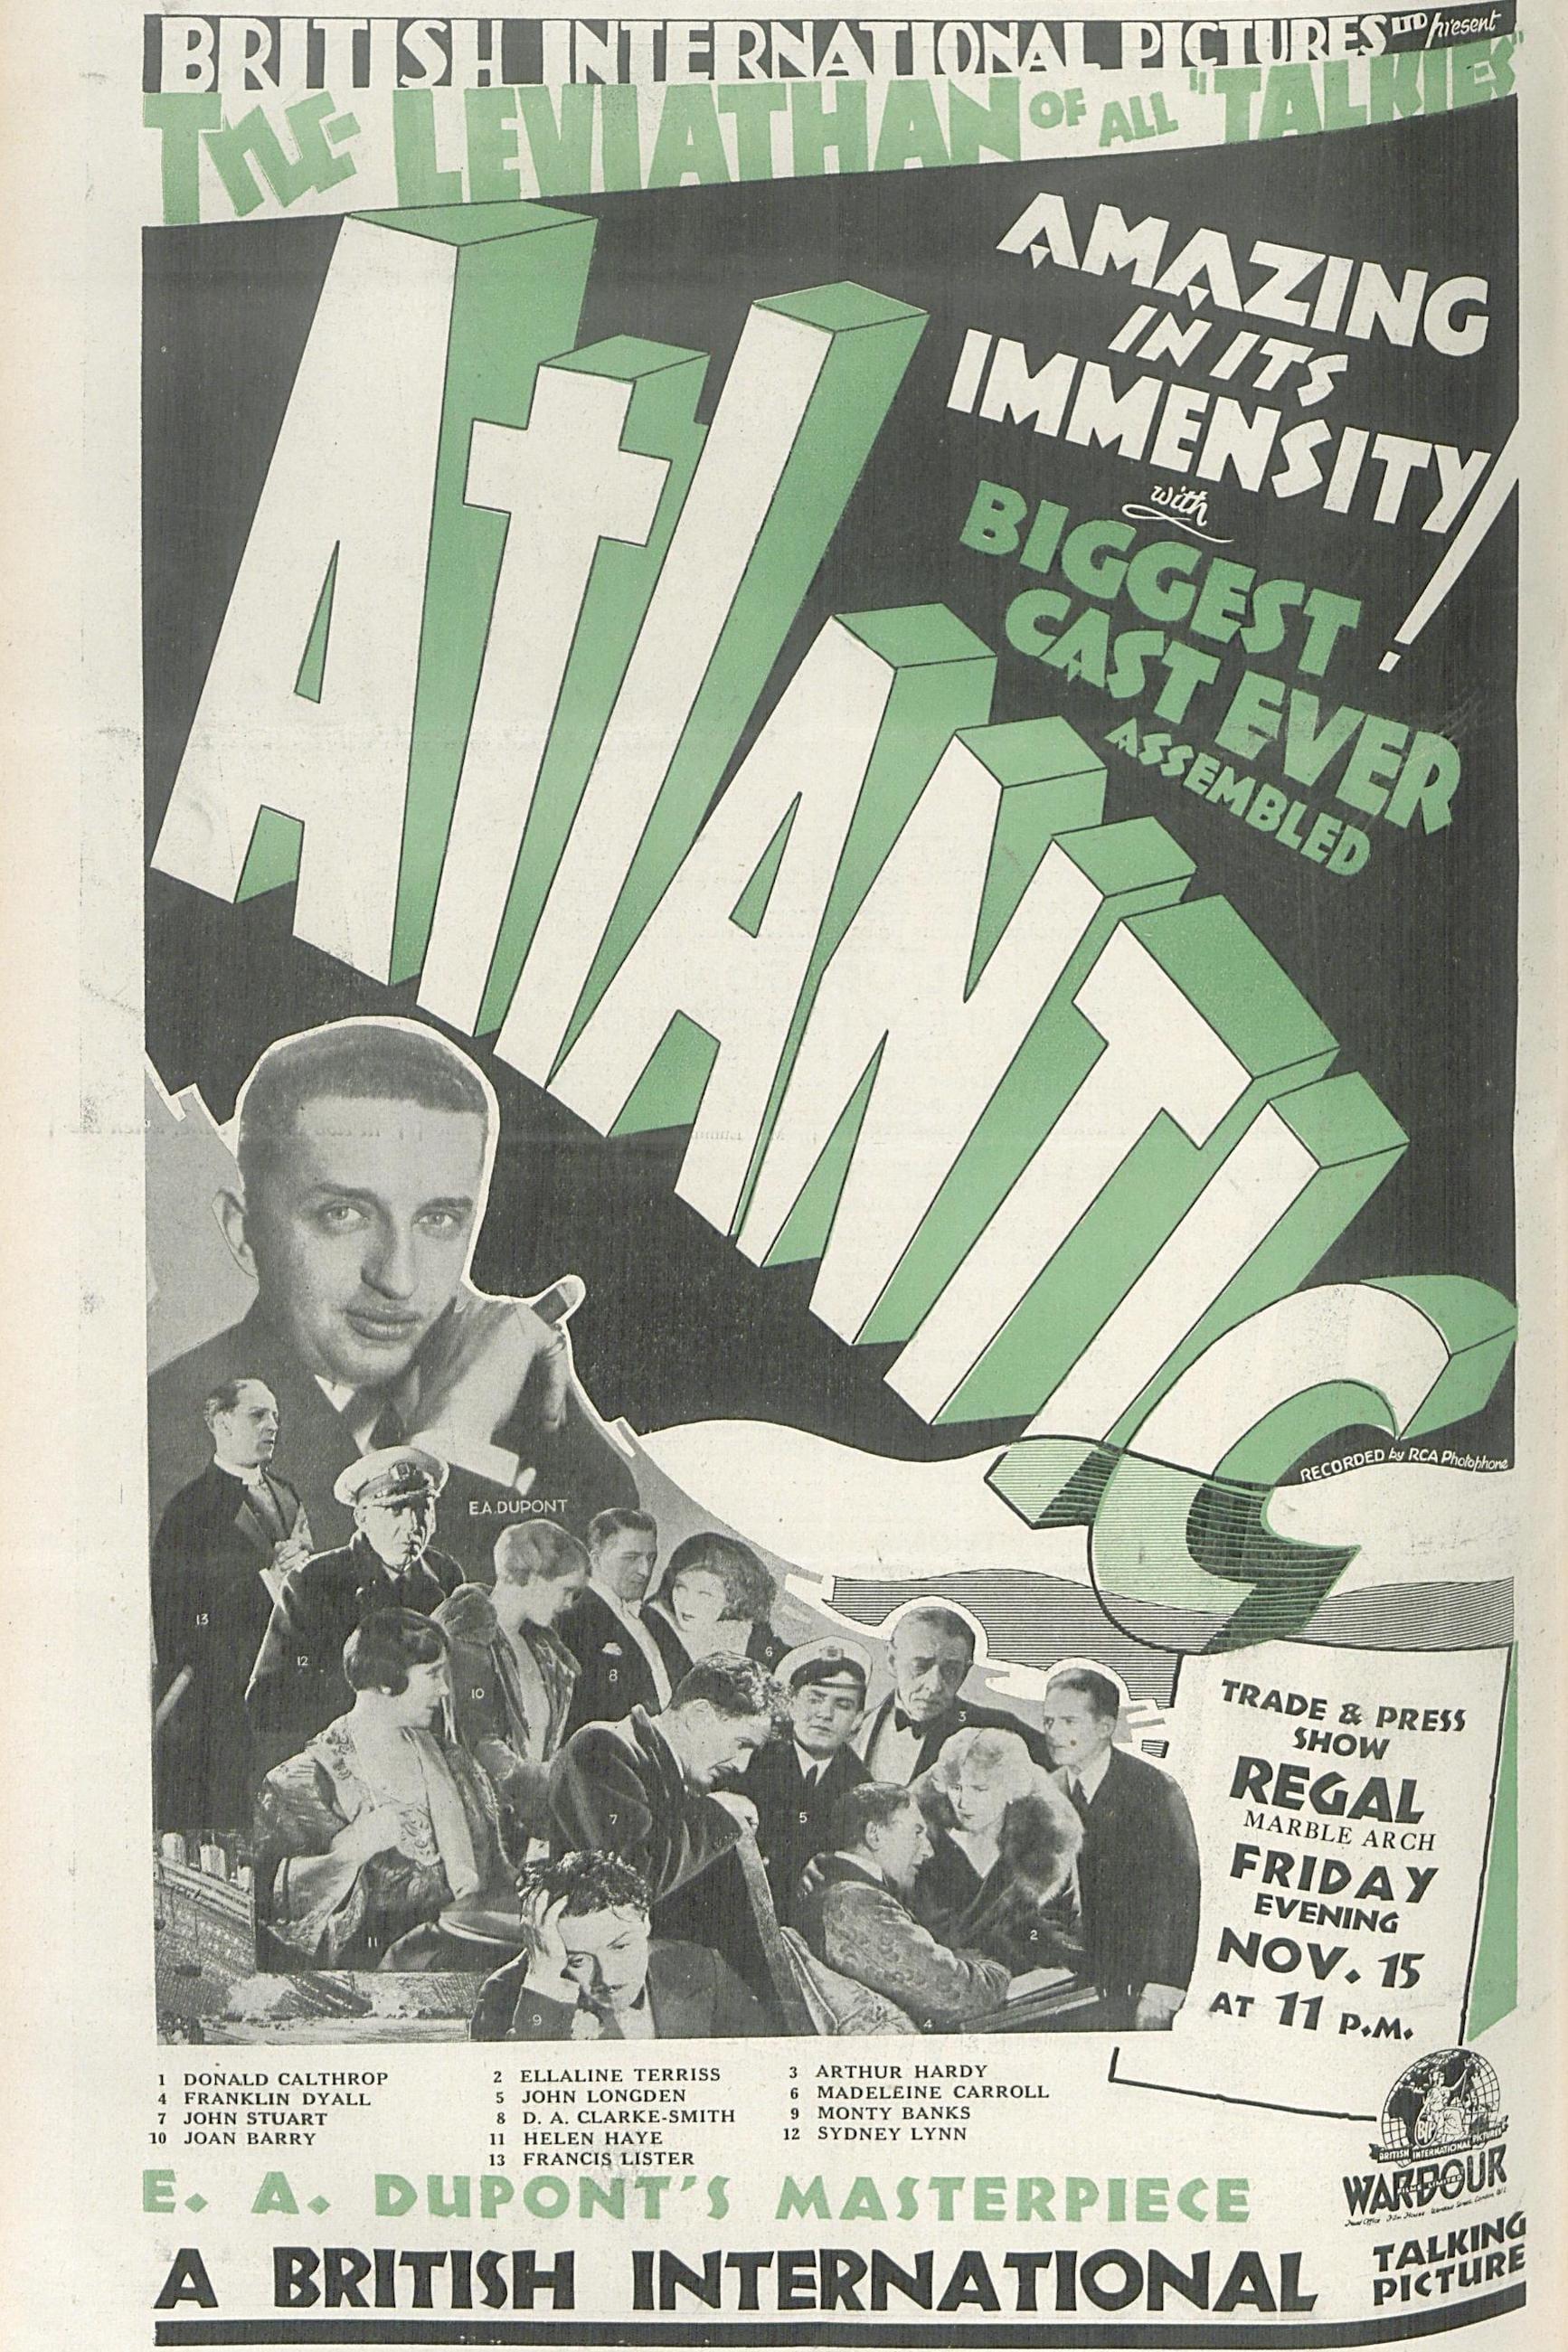 Atlantic poster